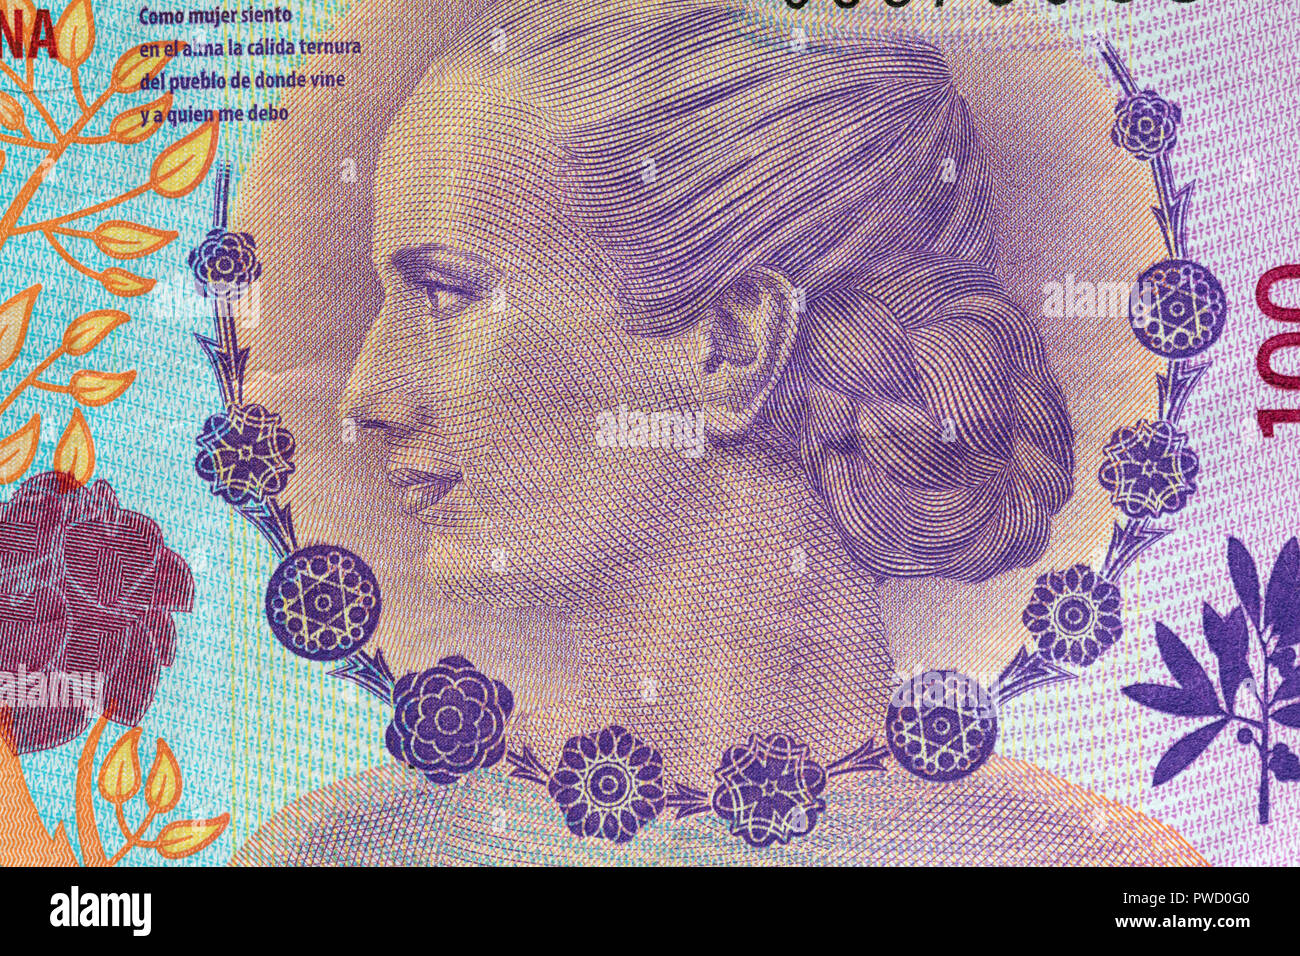 Ritratto di Maria Eva Duarte de Peron da 100 pesos banconota, Argentina Foto Stock